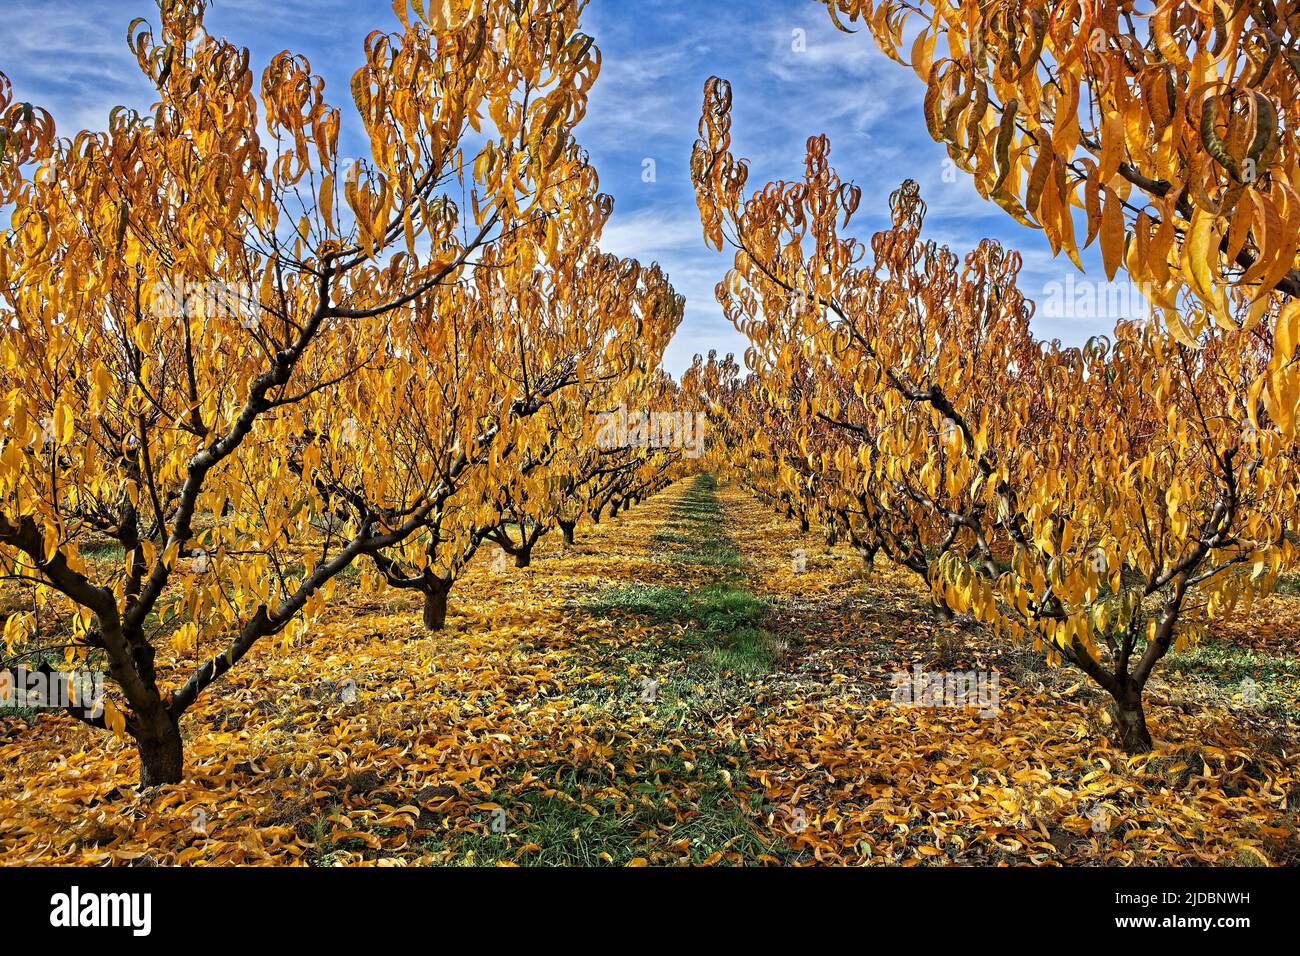 France, Vaucluse Cerisier, verger avec feuillage d'automne Banque D'Images